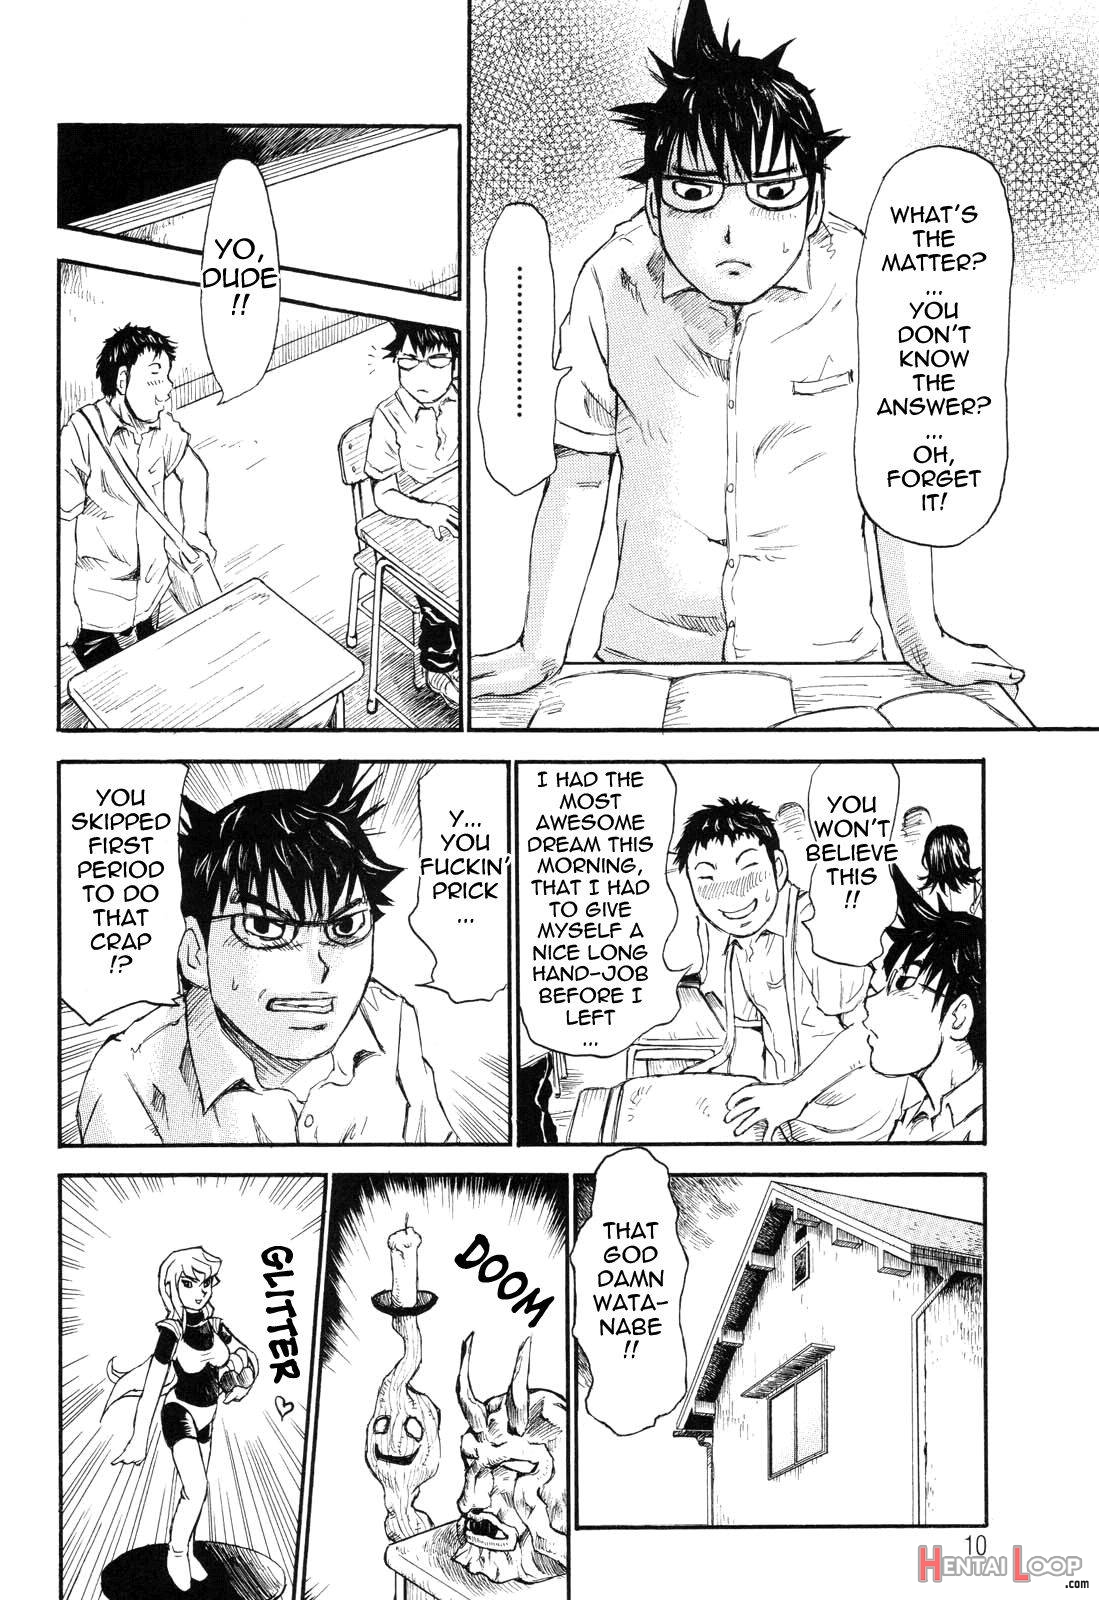 Umarete Hajimete page 10